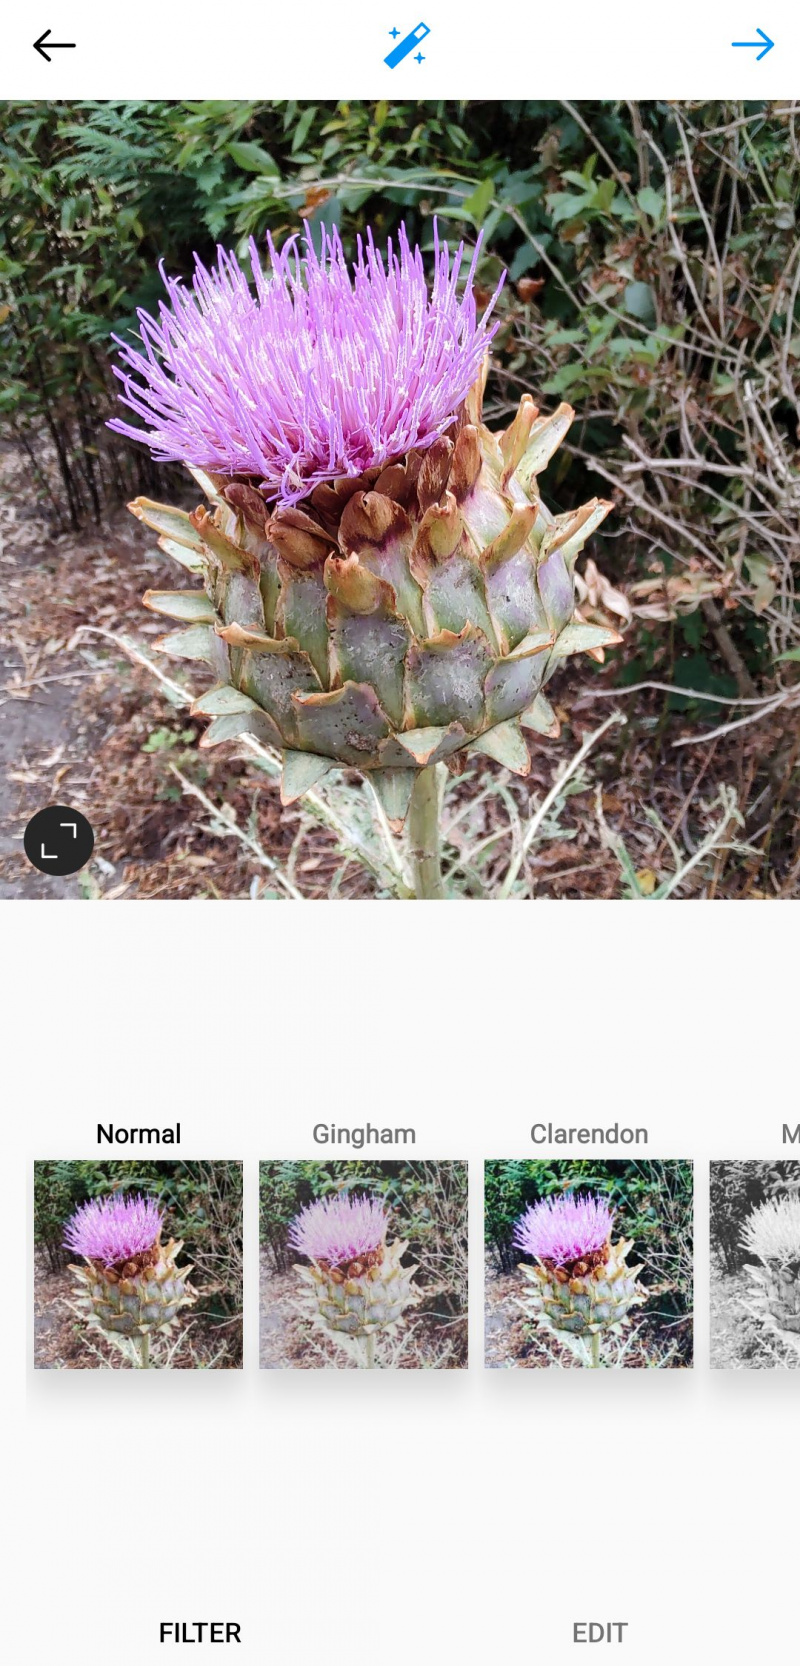   Lux attēla uzlabošanas ikona pakalpojumā Instagram mobilajām ierīcēm